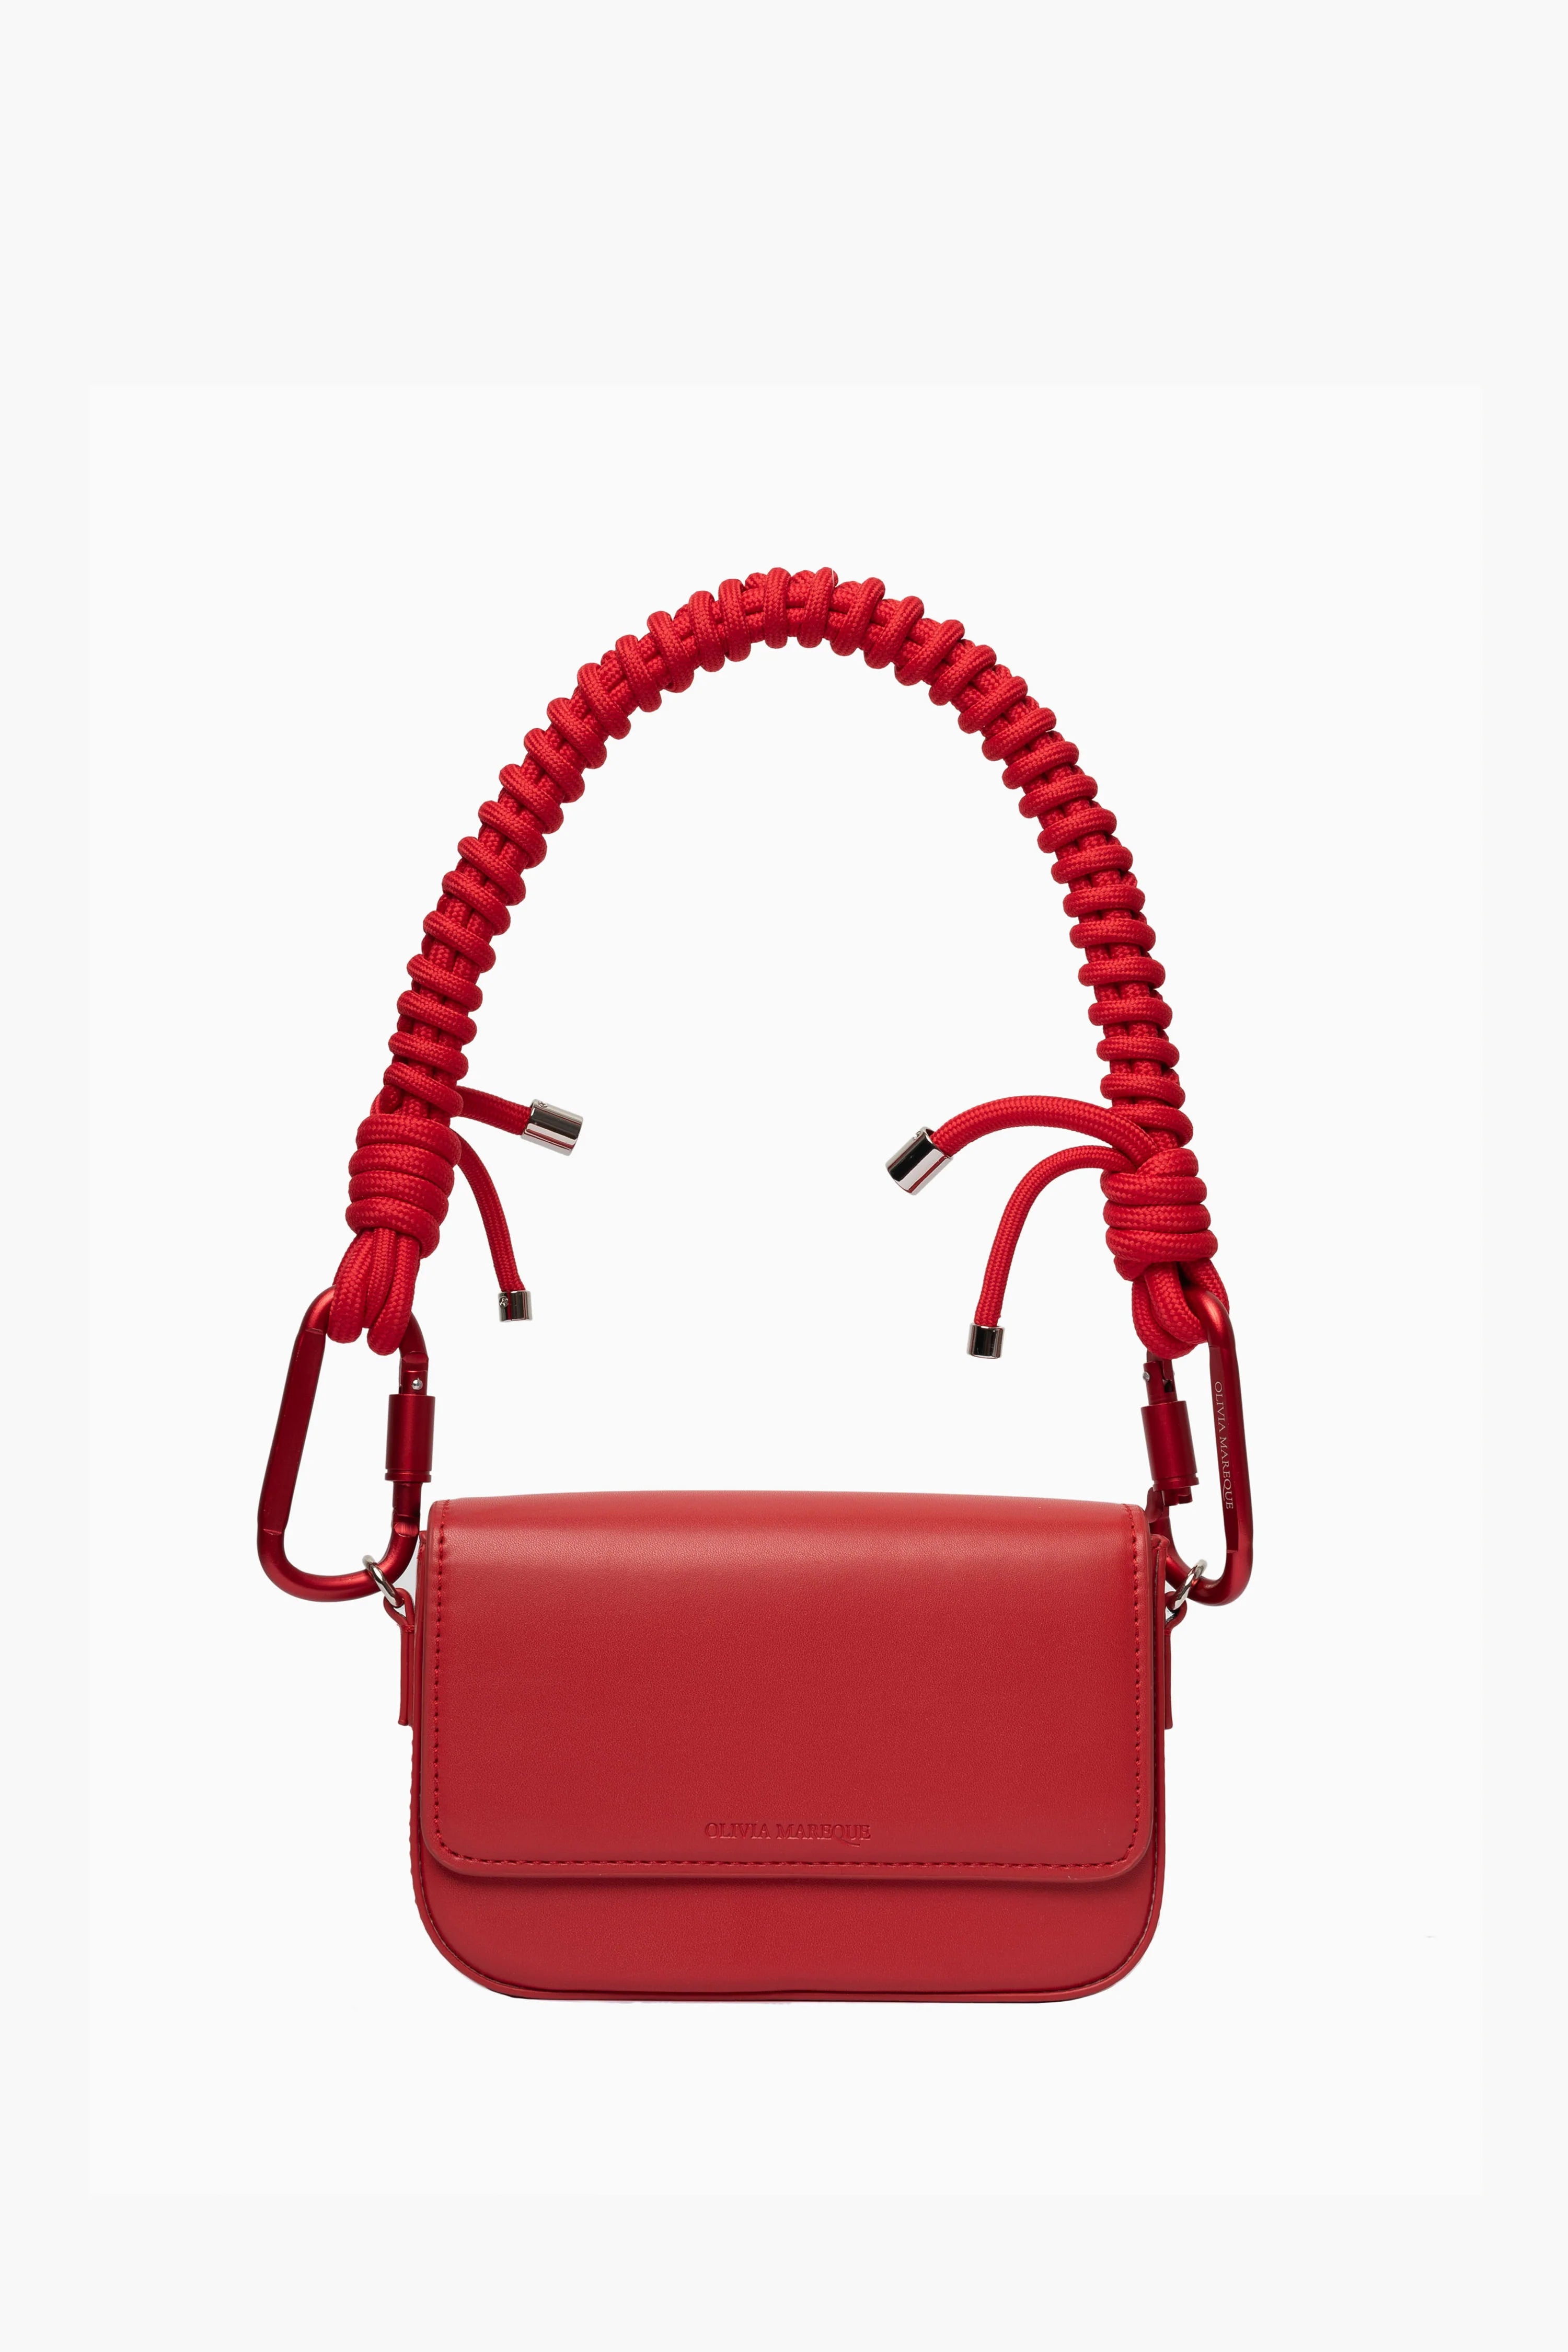 Red Pantone Bag